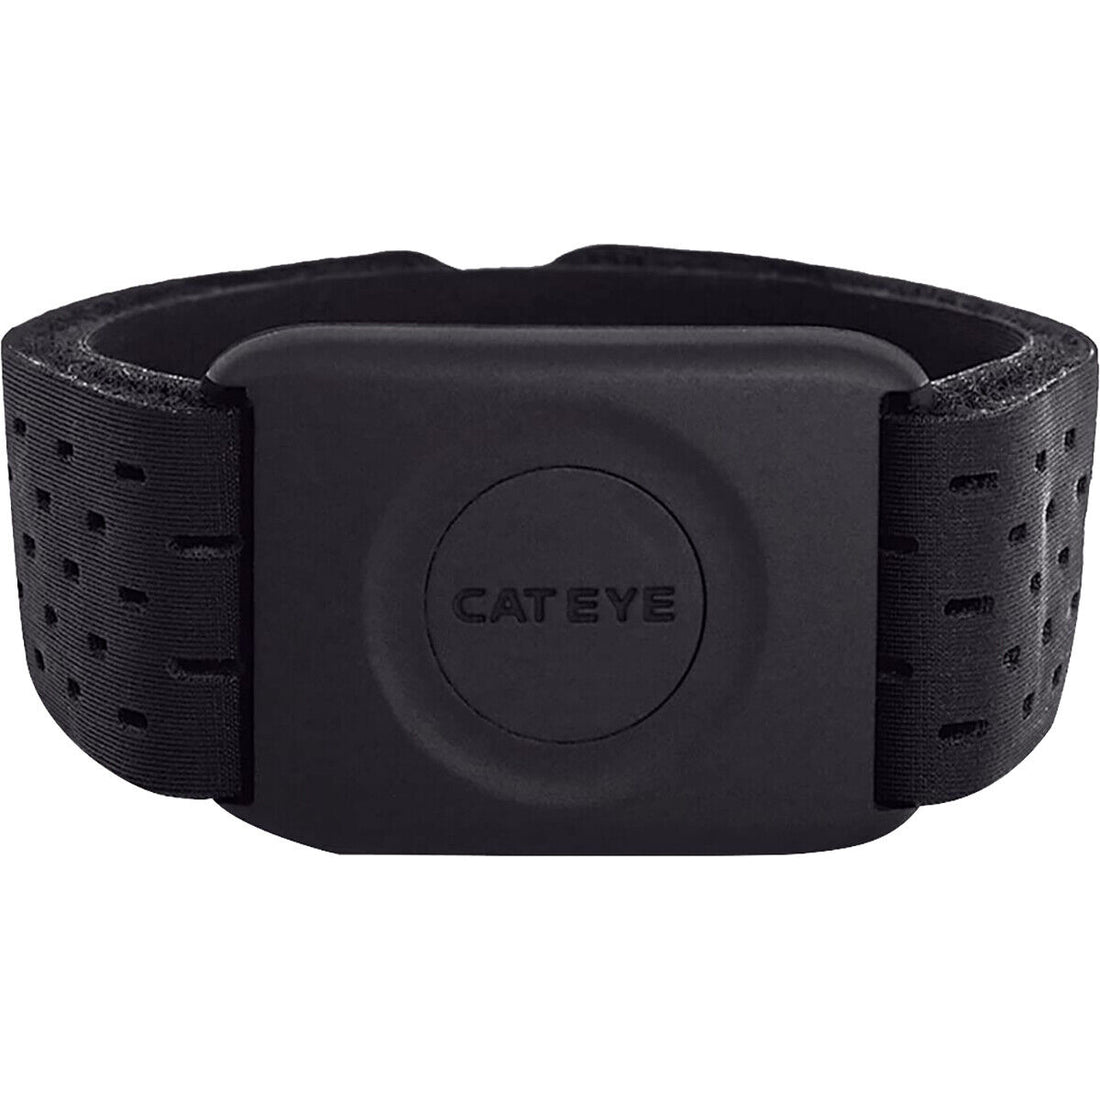 Cyclomètres_et_montres|CatEye,_Capteur_cardiaque_OHR-31,_ANT+,_BT|CatEye|Cycle_LM